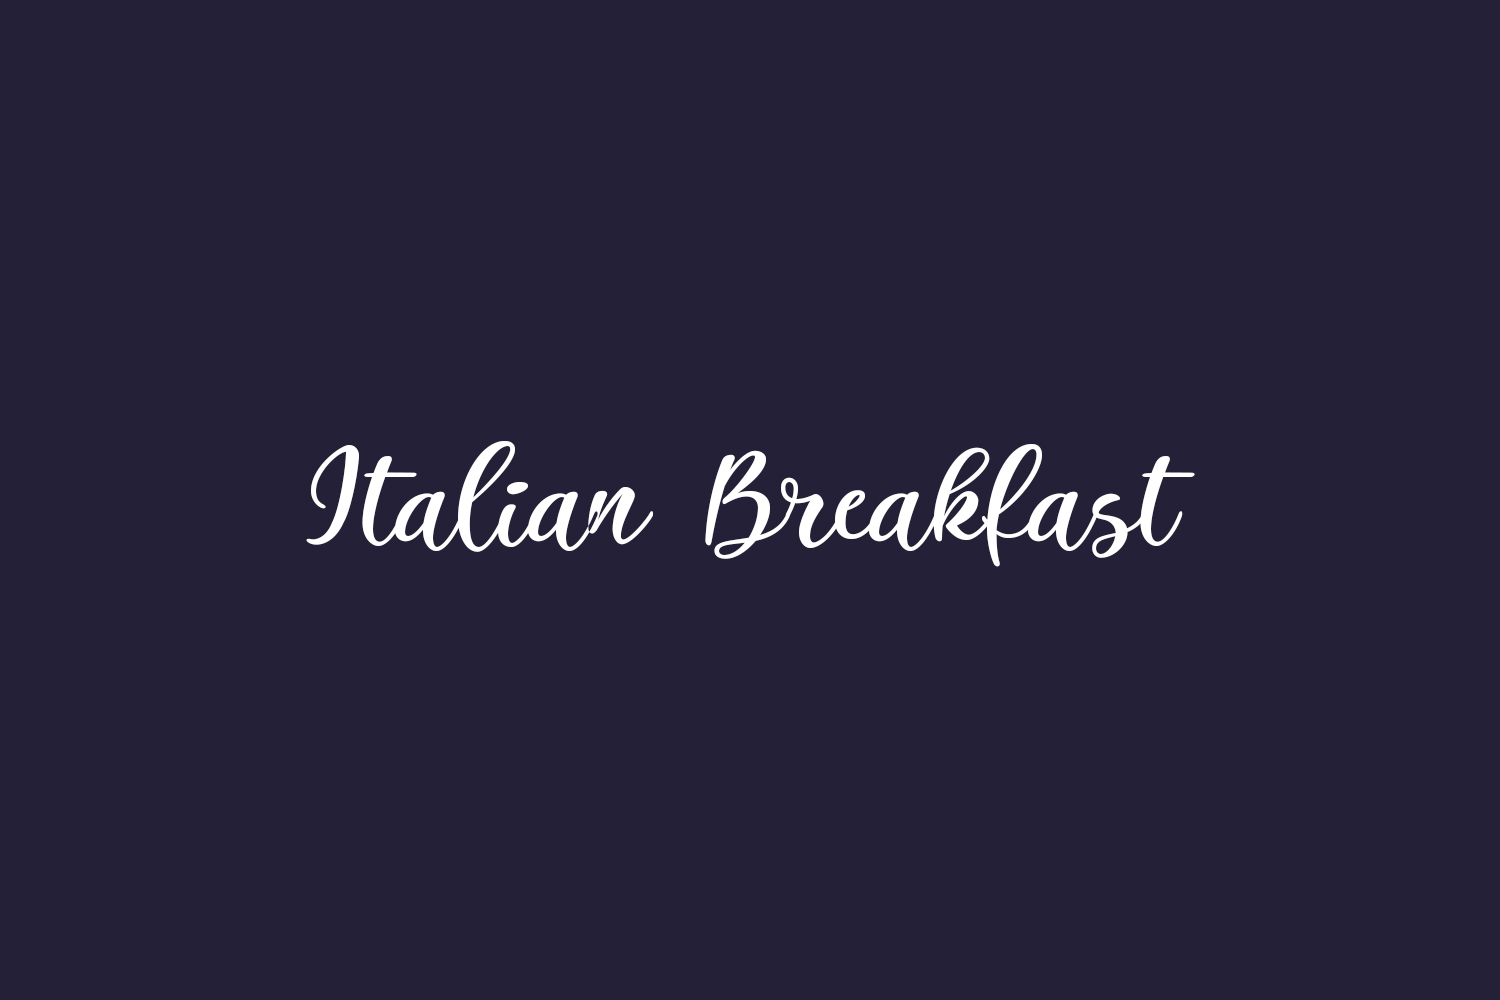 Italian Breakfast Free Font